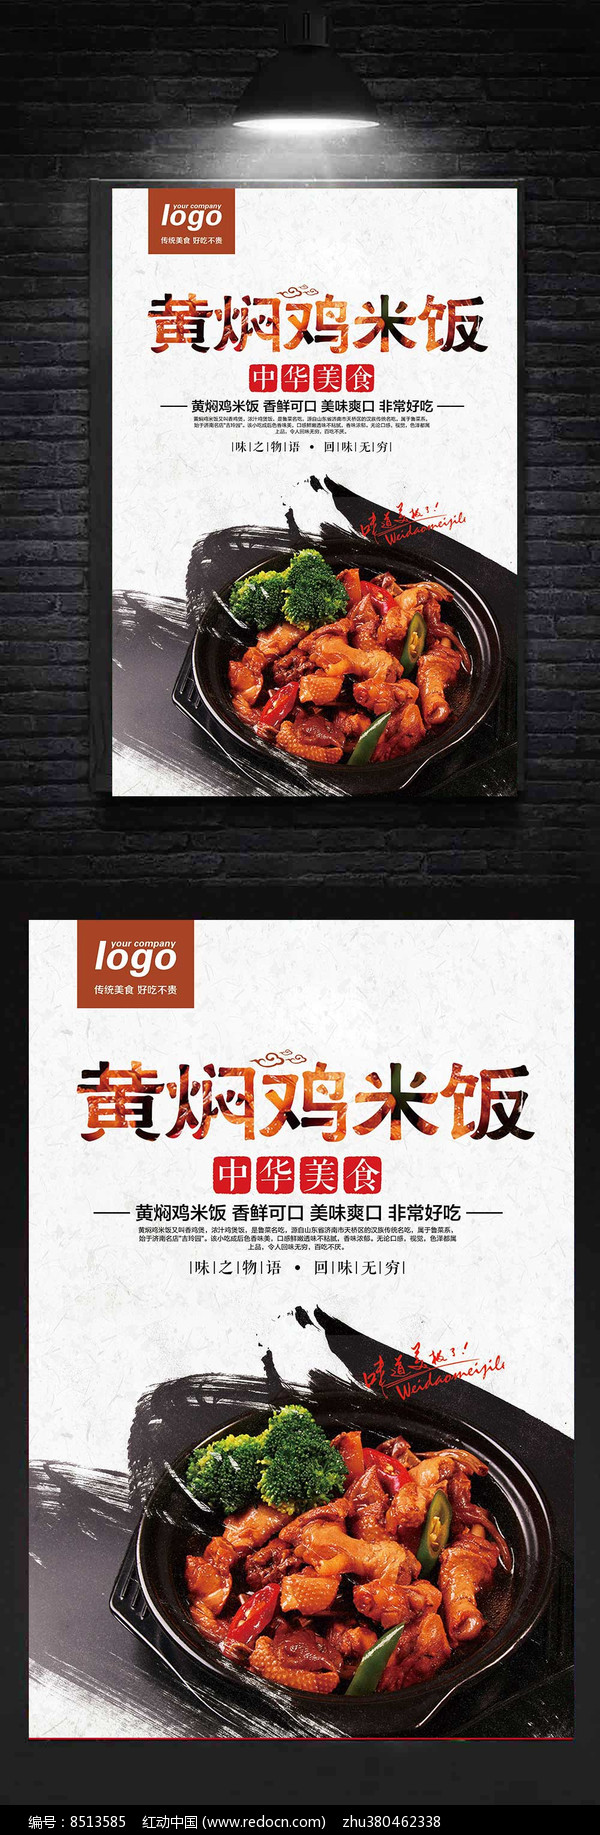 黄焖鸡米饭中国风美食海报图片